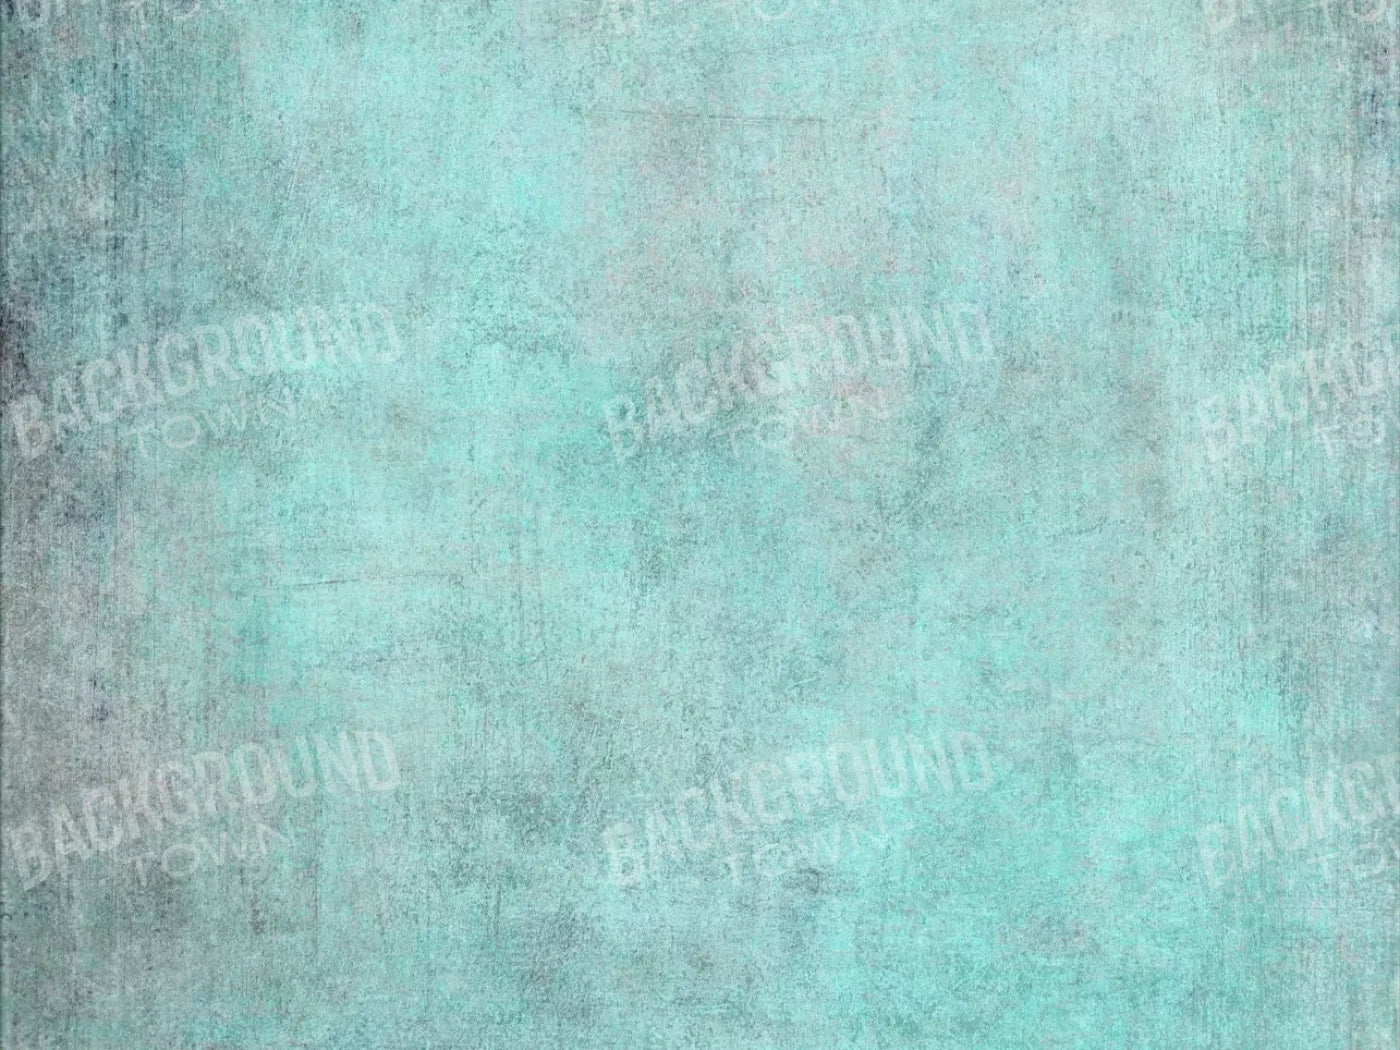 Grunge Seafoam 68X5 Fleece ( 80 X 60 Inch ) Backdrop